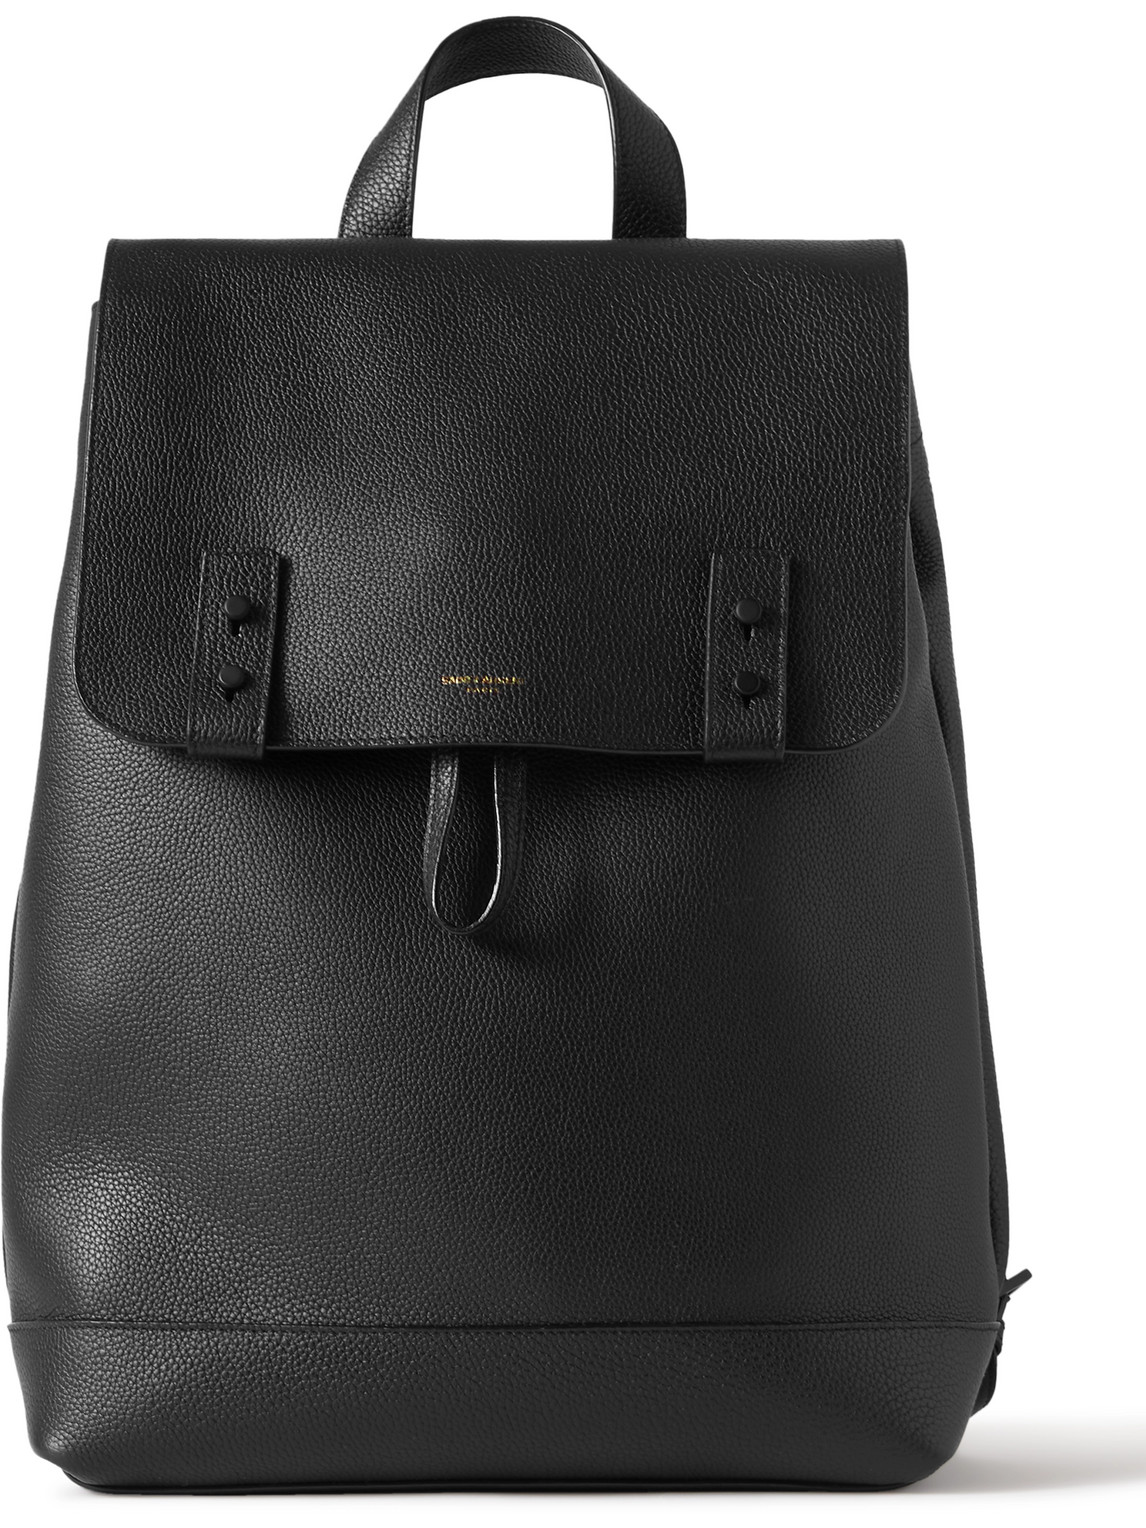 Full-Grain Leather Backpack